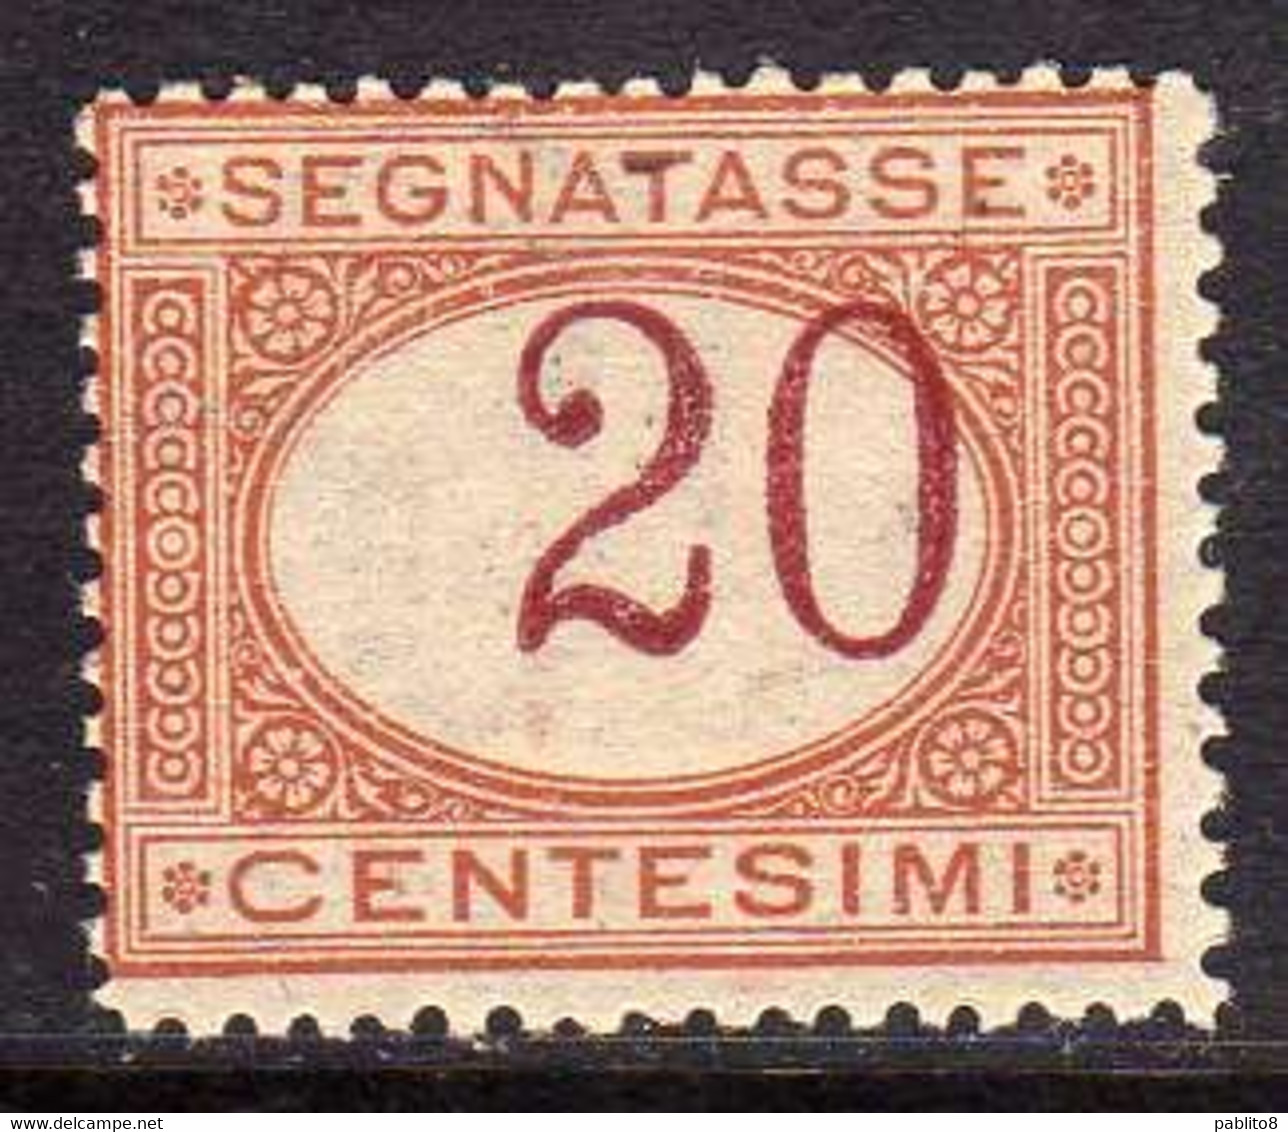 ITALIA REGNO ITALY KINGDOM 1890 SEGNATASSE CENT. 20 MNH CON CIFRA FORTEMENTE SPOSTATA A DESTRA - Portomarken